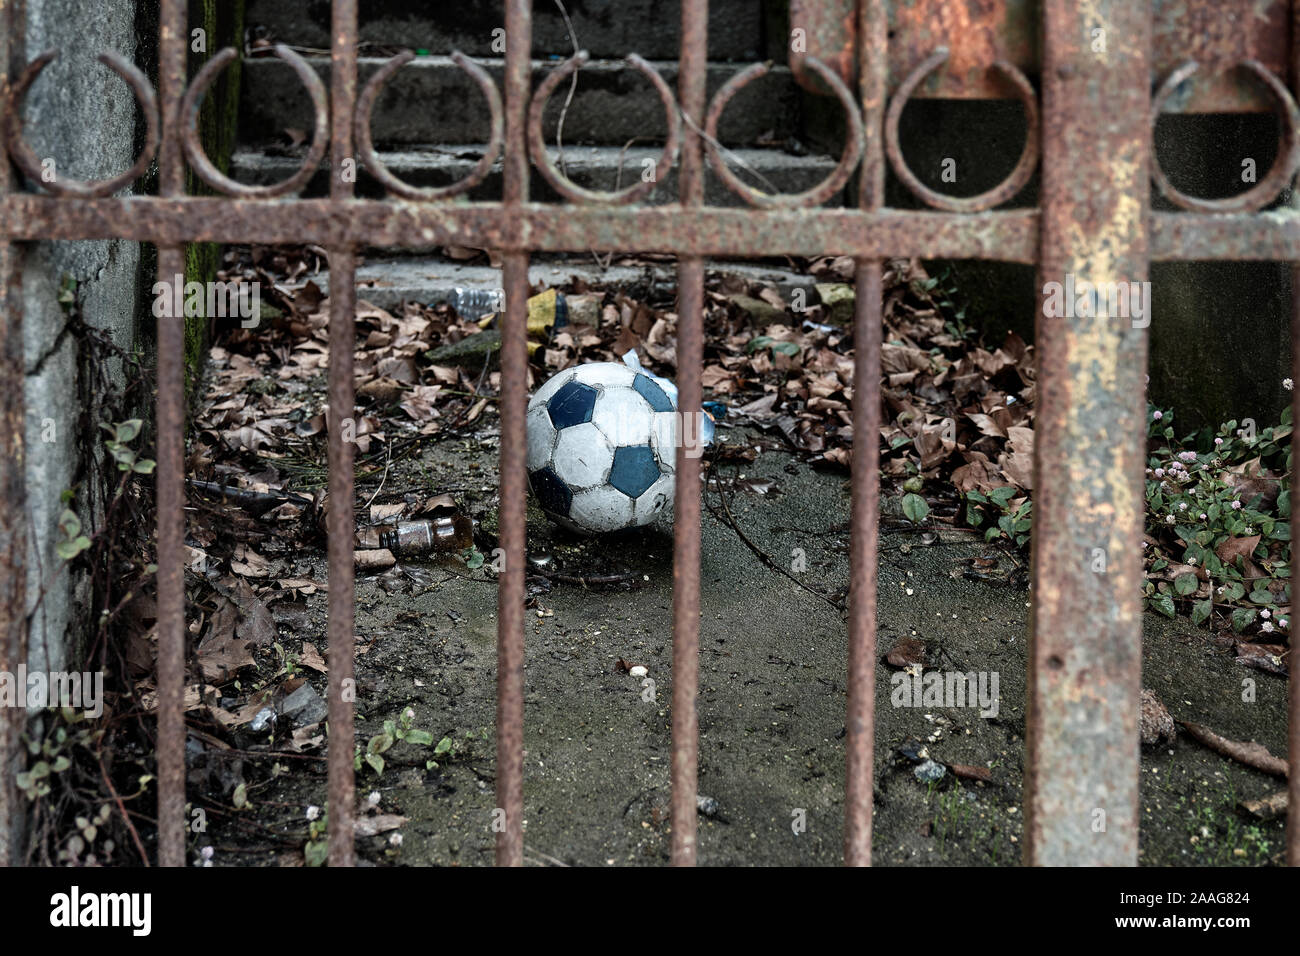 El balón de fútbol está cercada, detrás de las rejas de un portón de hierro oxidado. Foto de stock